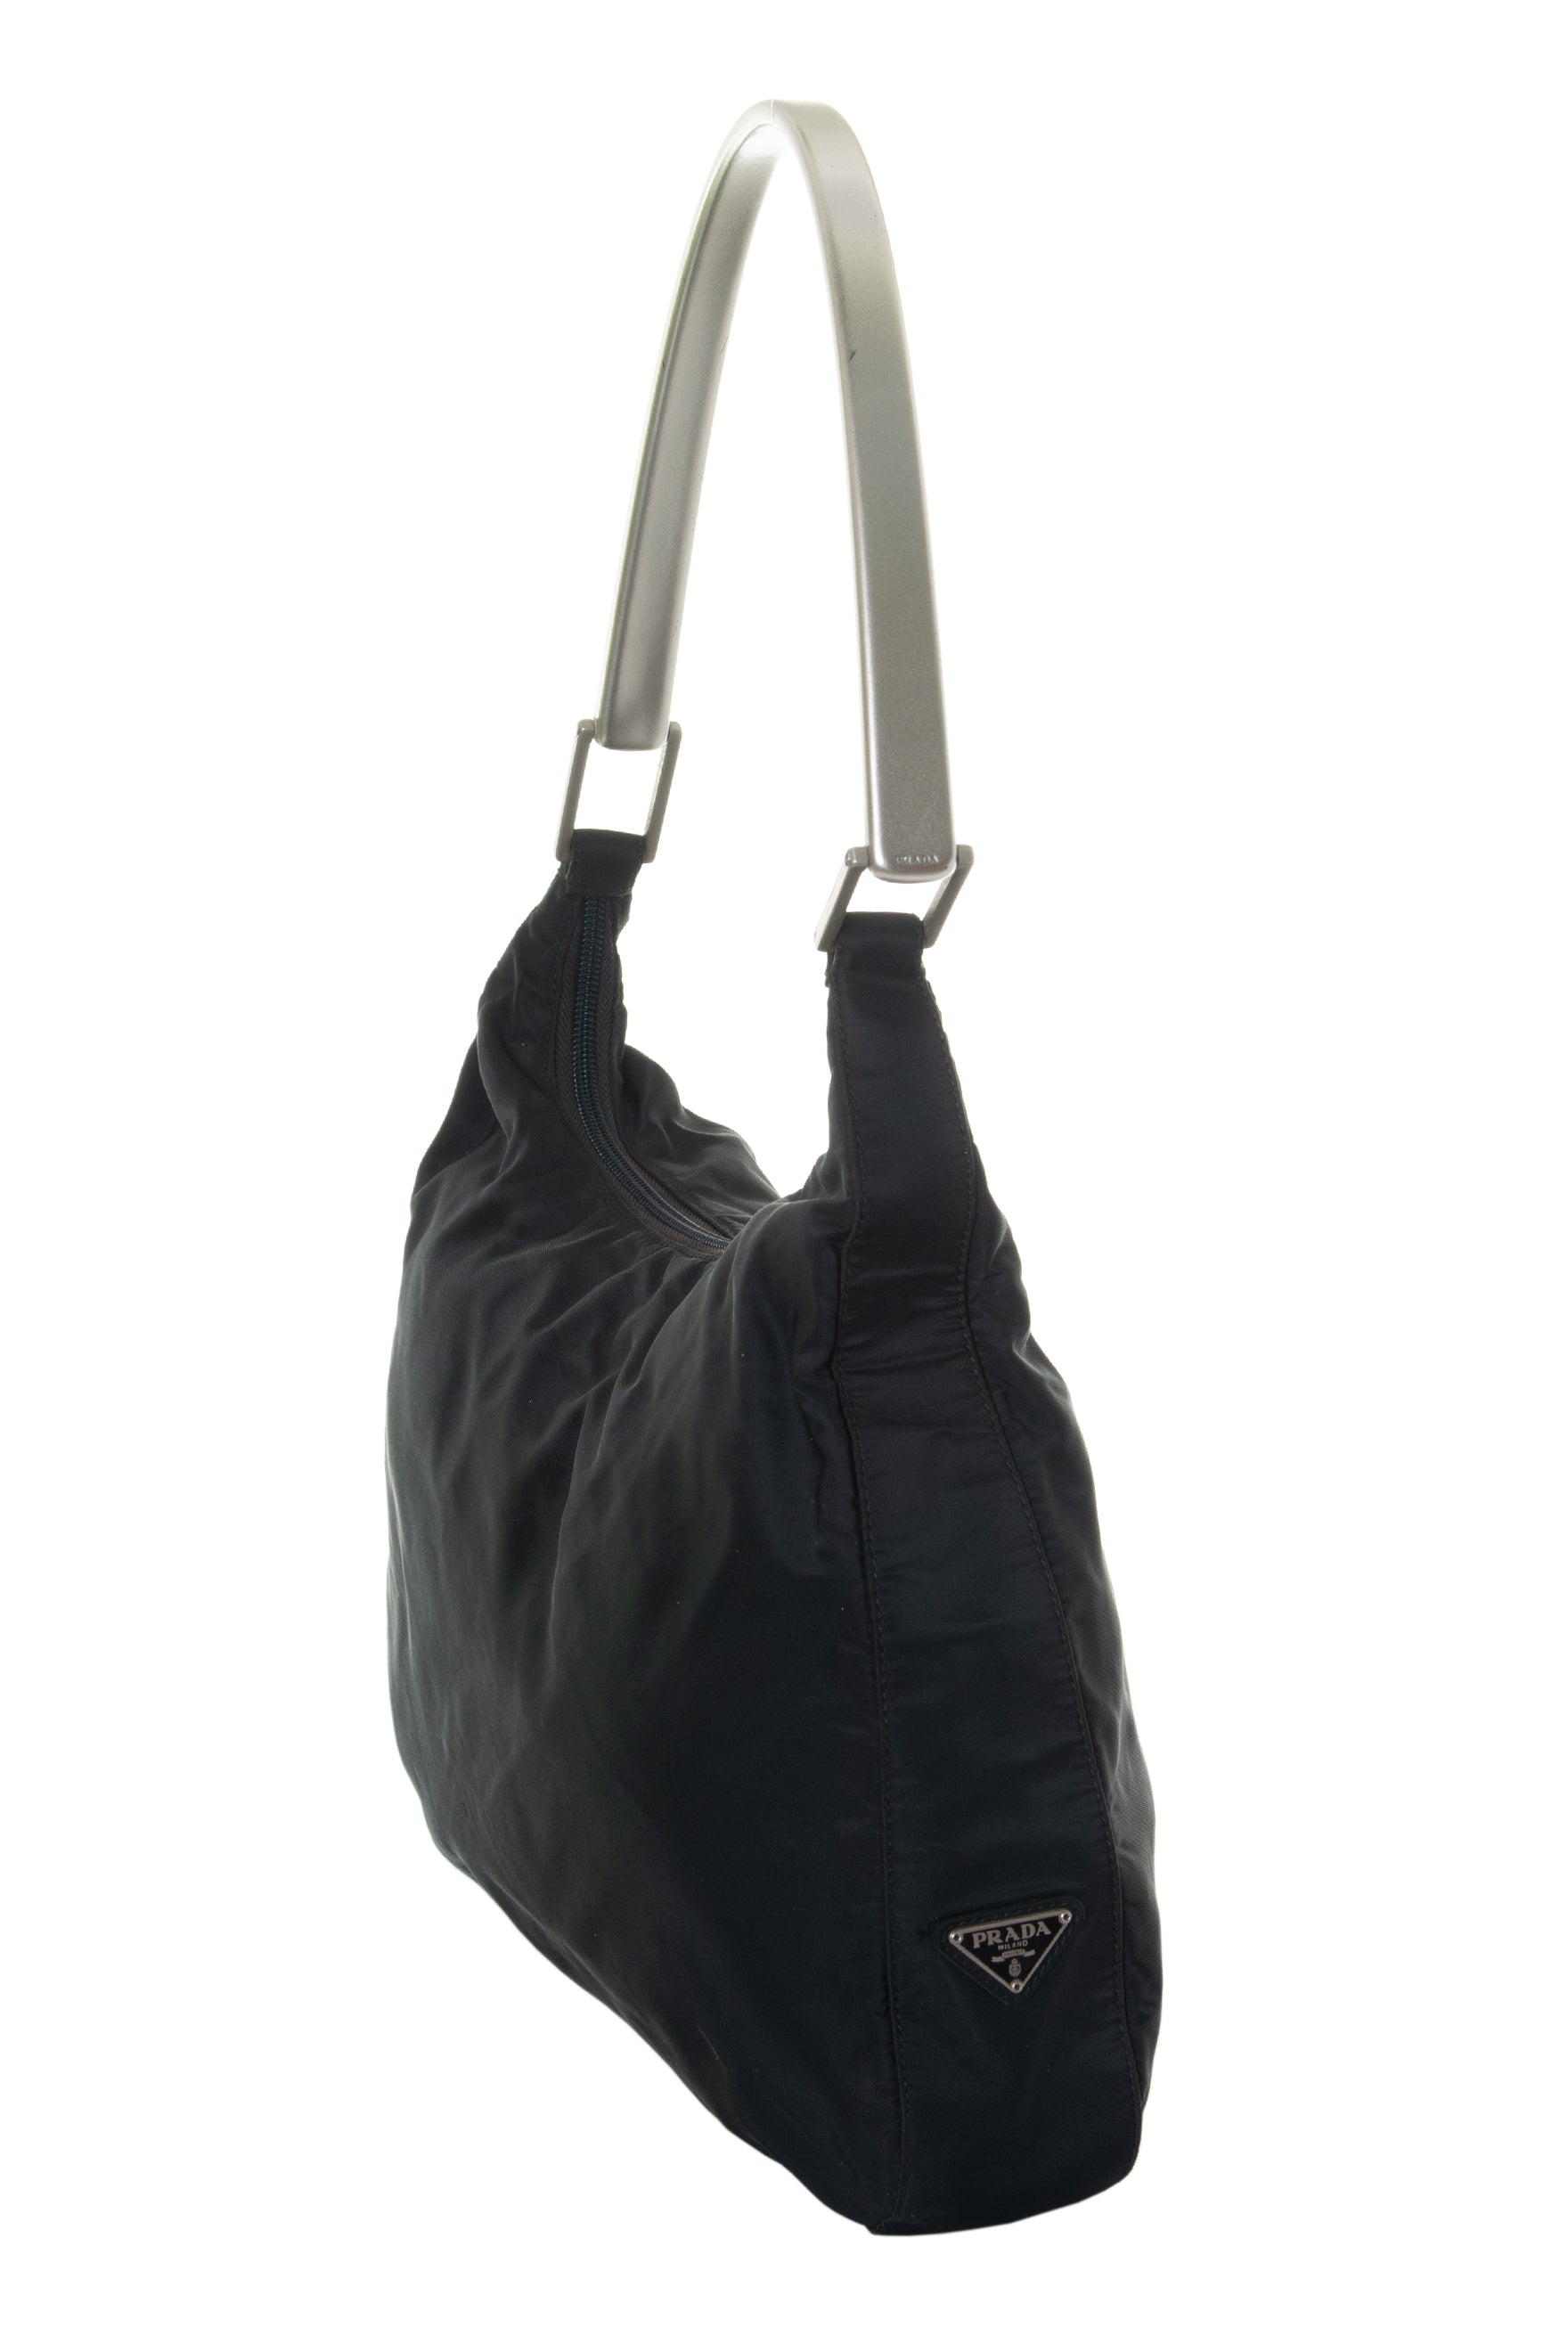 Buy PRADA / Prada □Semi-shoulder bag metal handle nylon moss